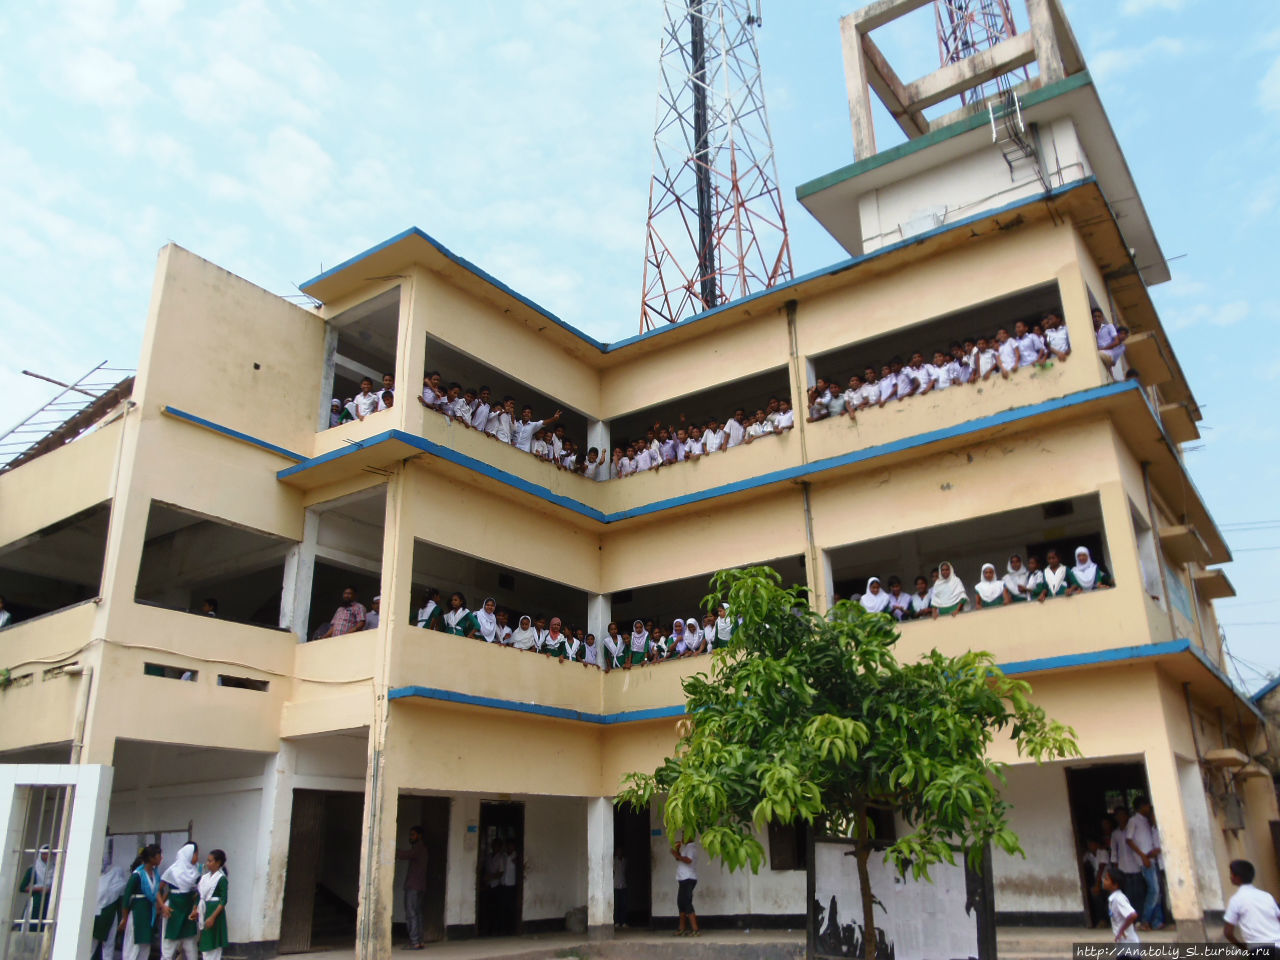 Школа в Сонаргаоне. Сонаргаон, Бангладеш